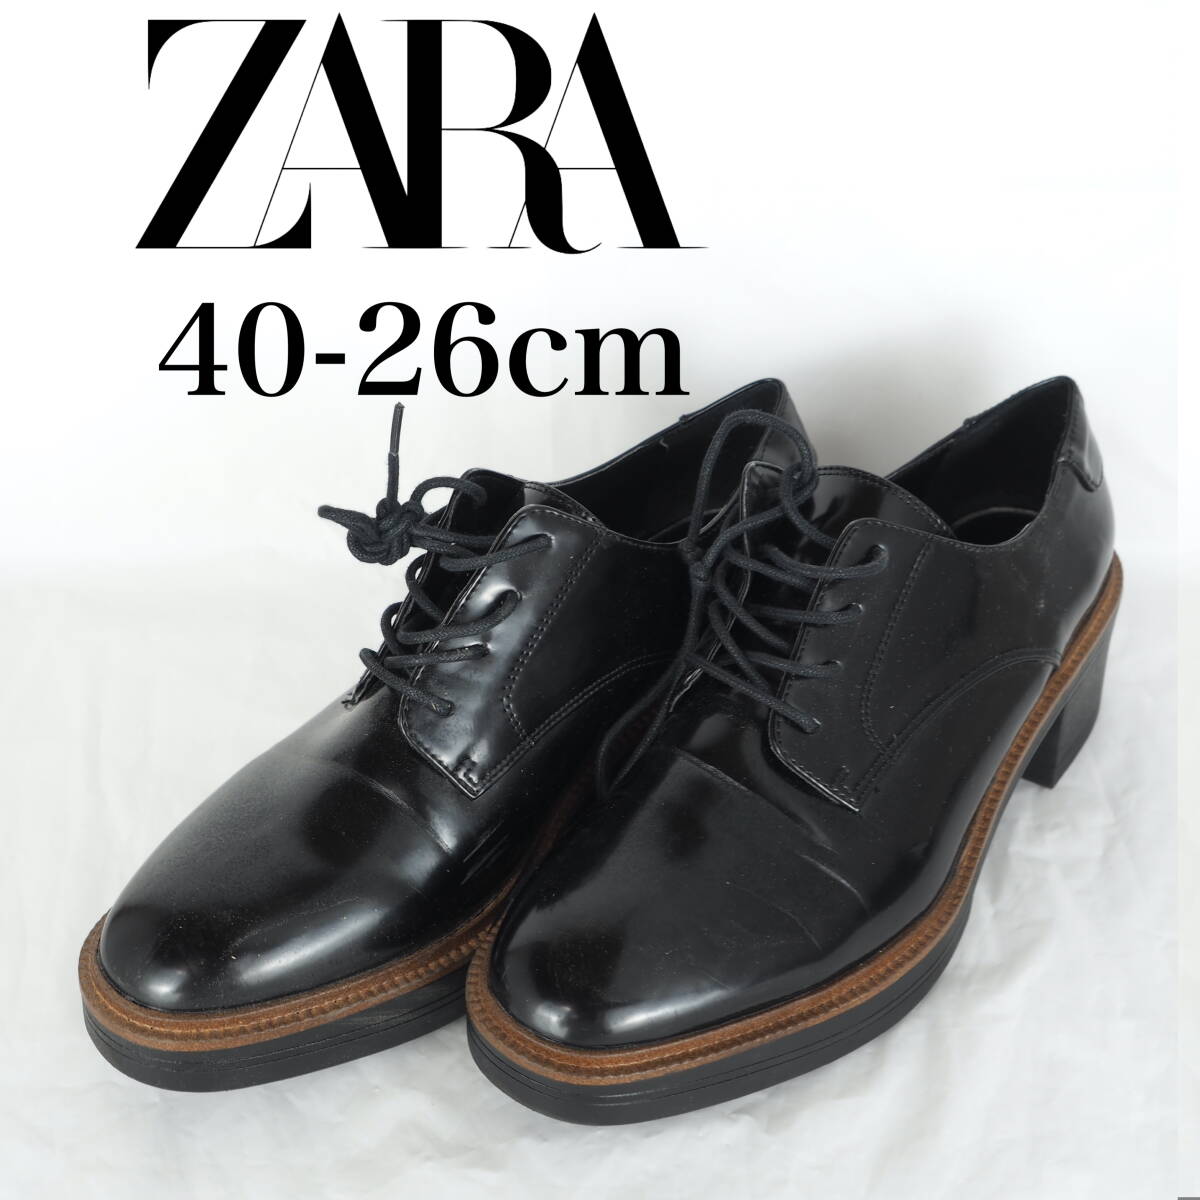 MK6366*ZARA* Zara * женская обувь *40-26cm* чёрный 